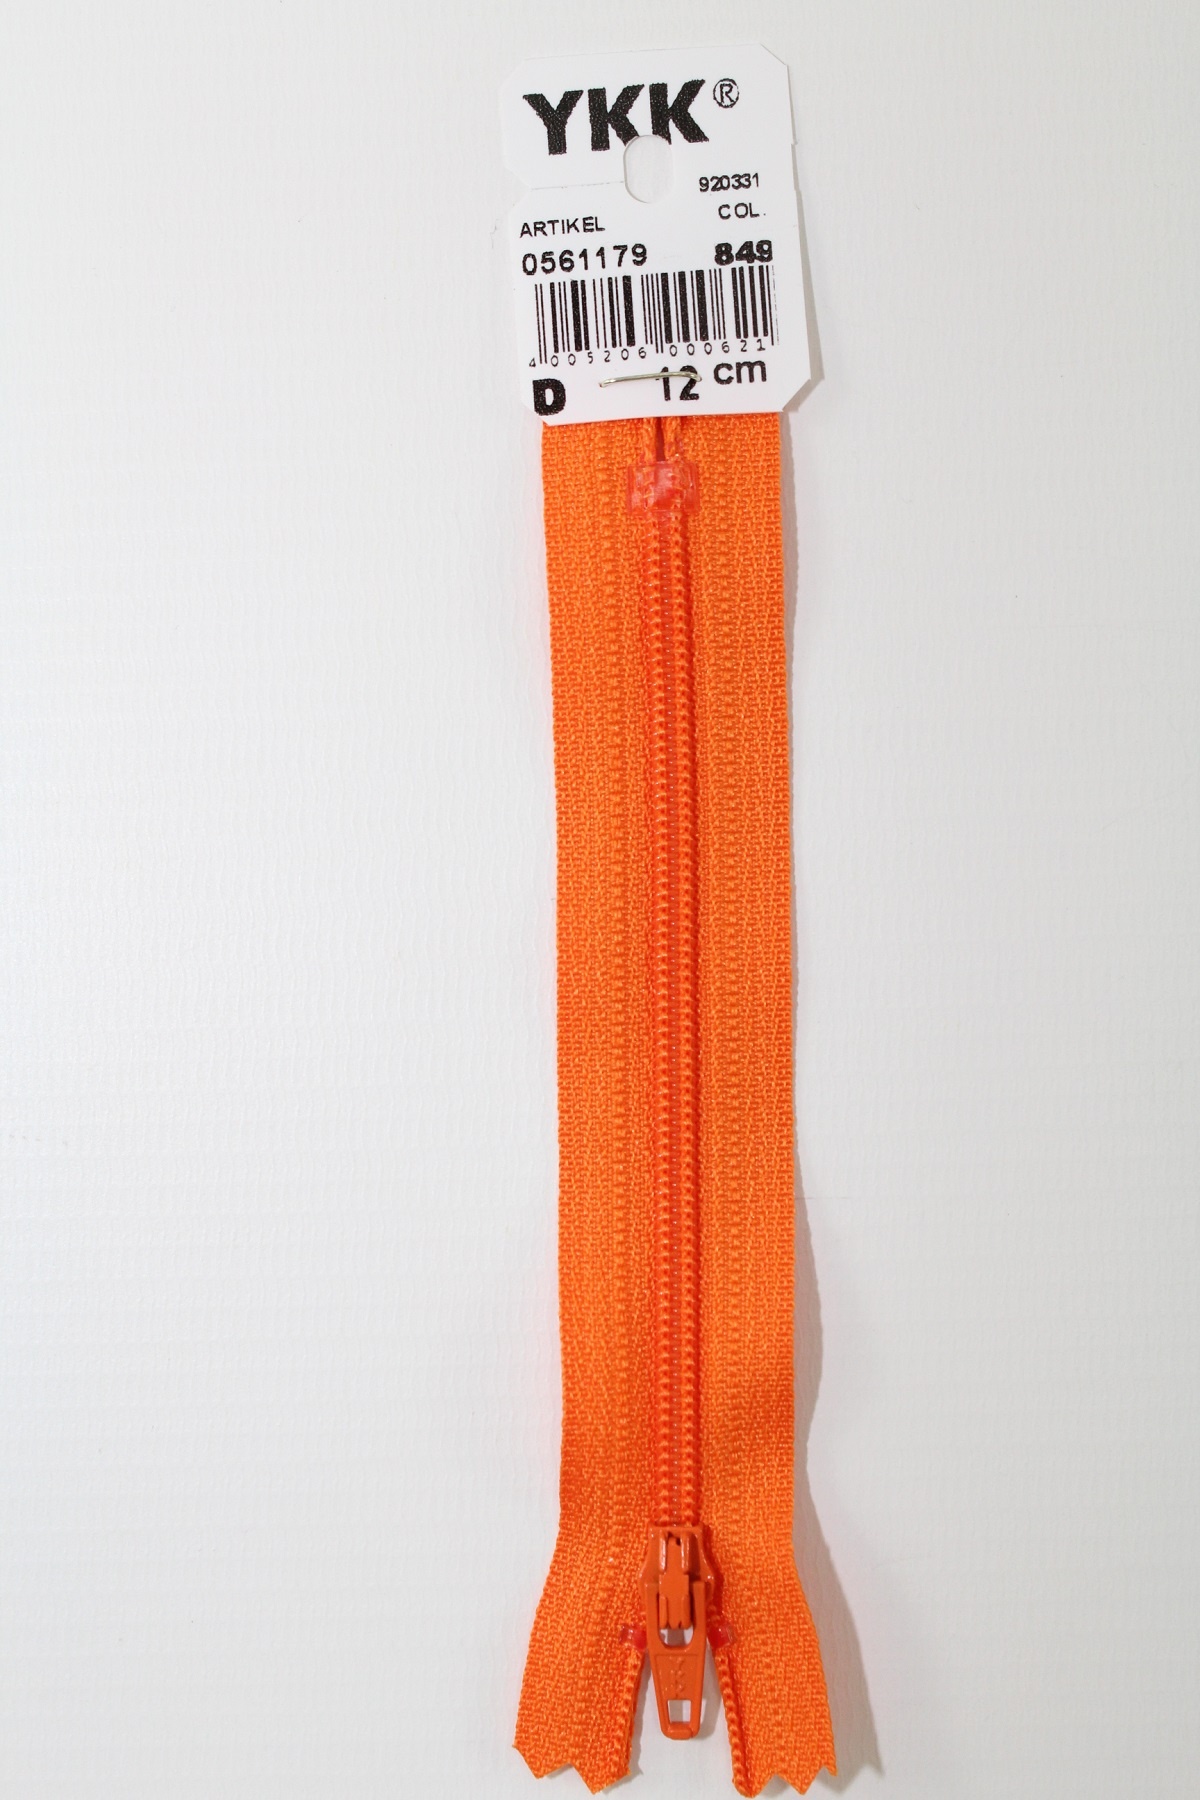 YKK-Reissverschluss 12cm-60cm, nicht teilbar, orange